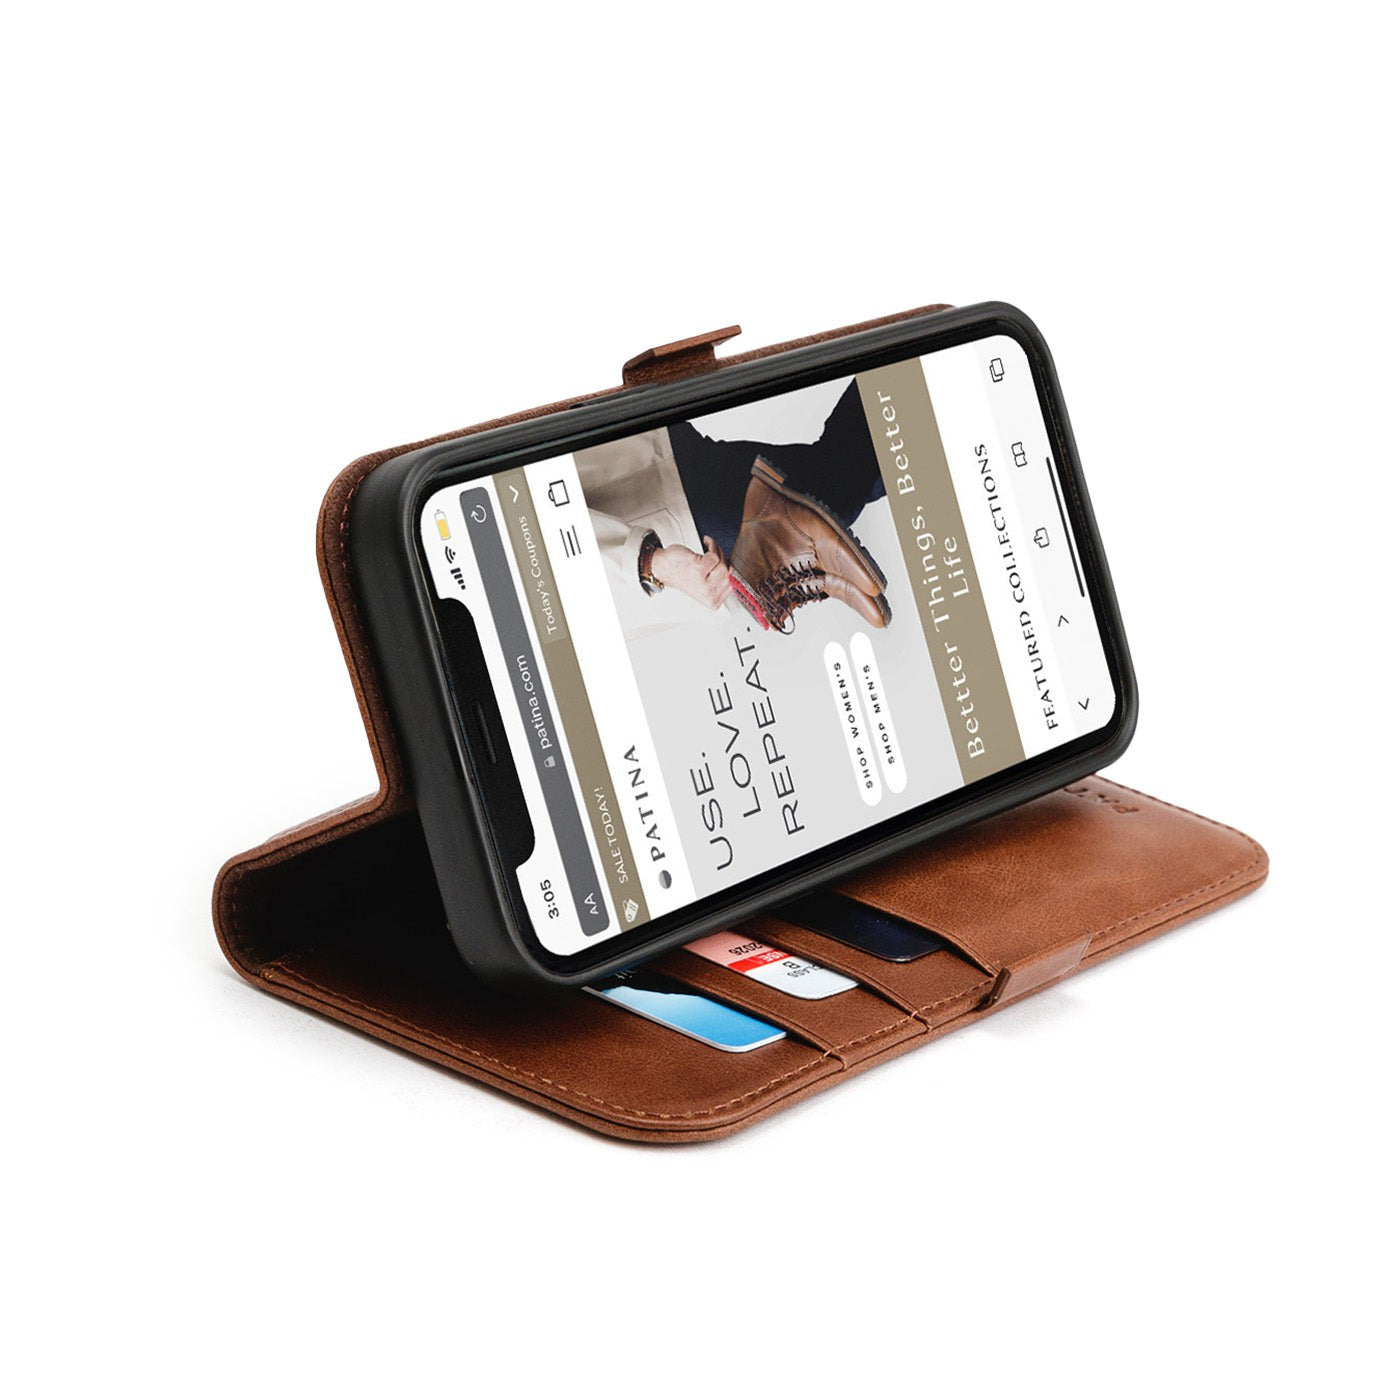 Rimpelingen Opwekking liefde iPhone Wallet Case – Portland Leather